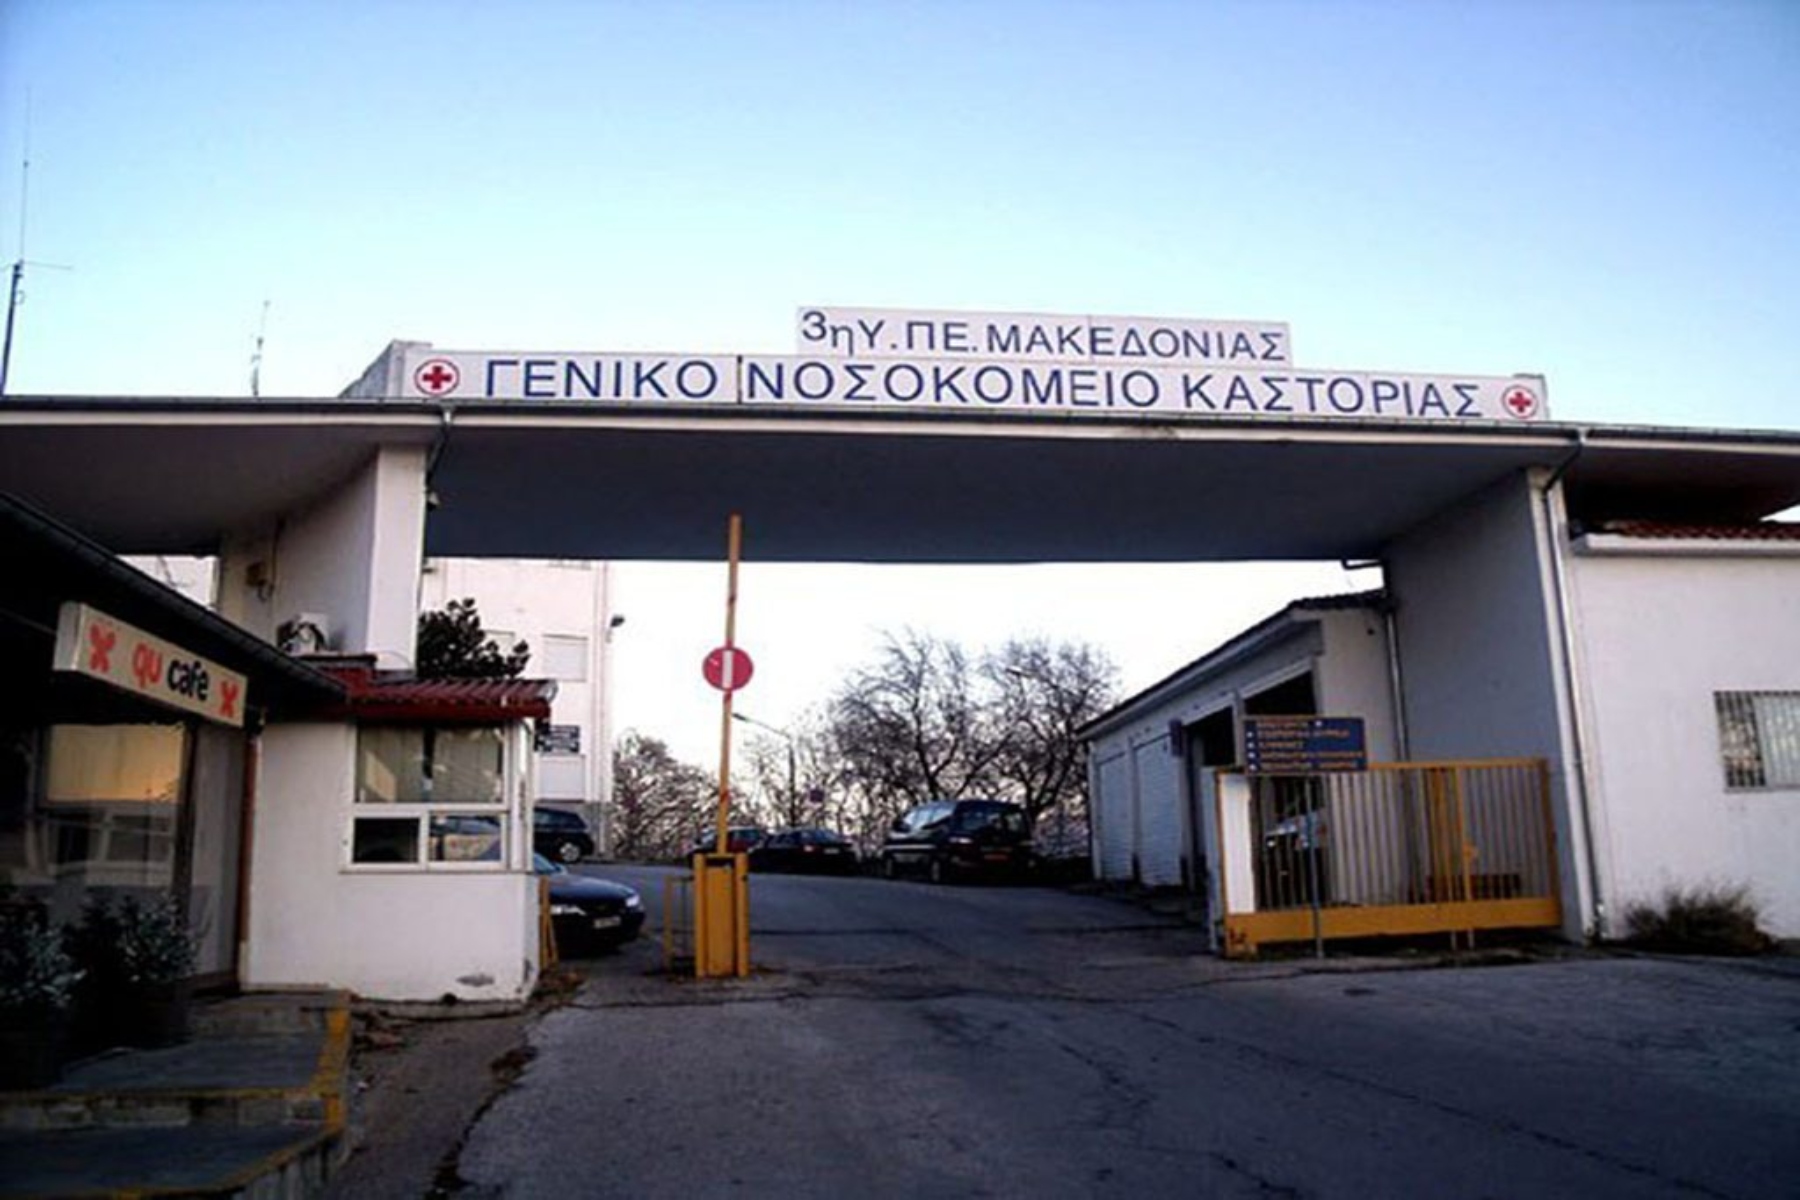 Επίσκεψη Μ. Θεμιστοκλέους στο Γ.Ν. Καστοριάς στα εγκαίνια της πλήρως ανακαινισμένης Παιδιατρικής Κλινικής, δωρέα της οικογενειας Μηλίου